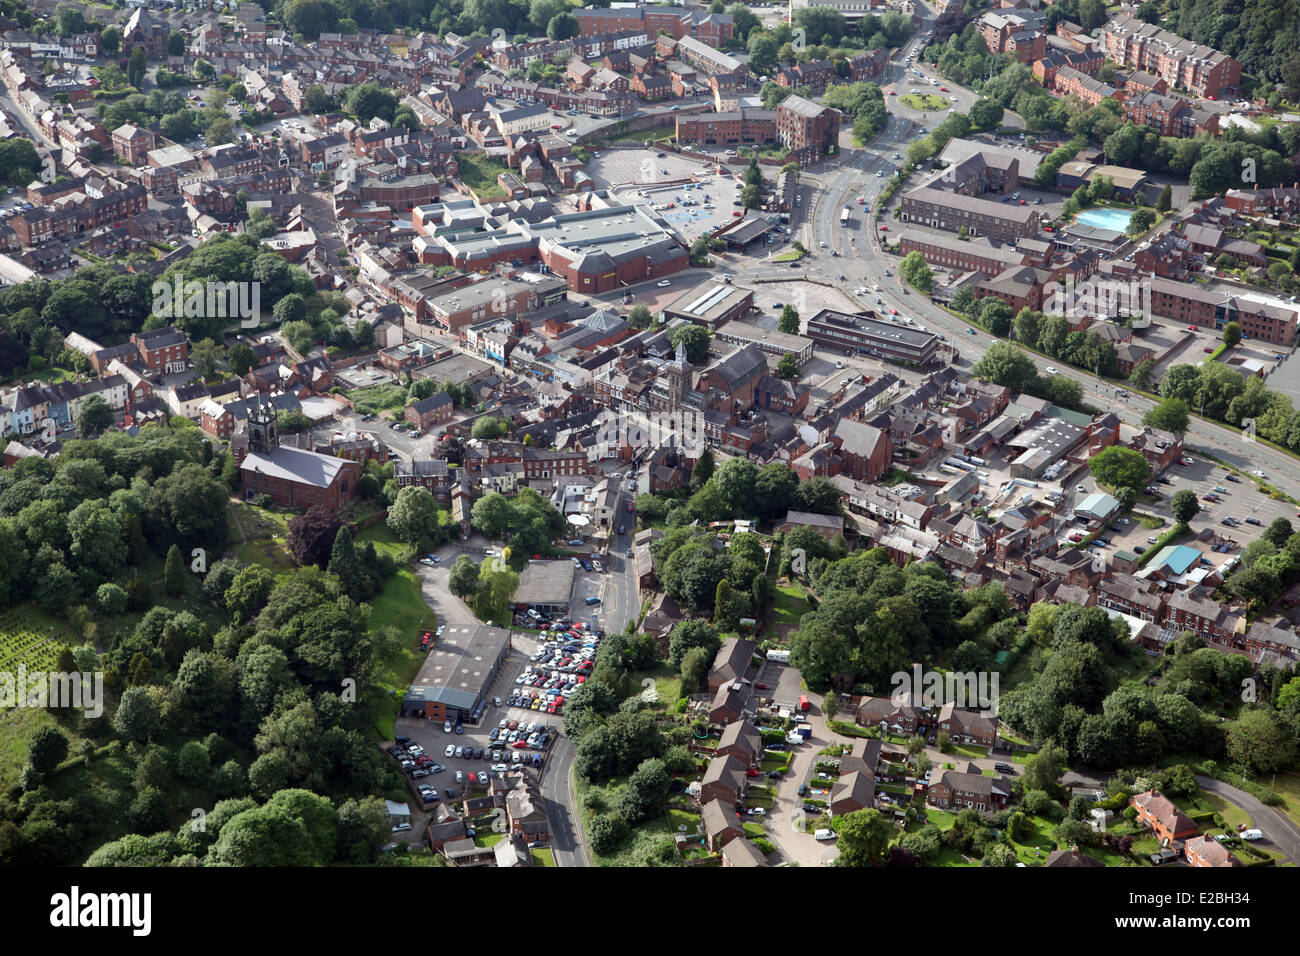 Vue aérienne de la ville de Congleton Cheshire, Royaume-Uni Banque D'Images